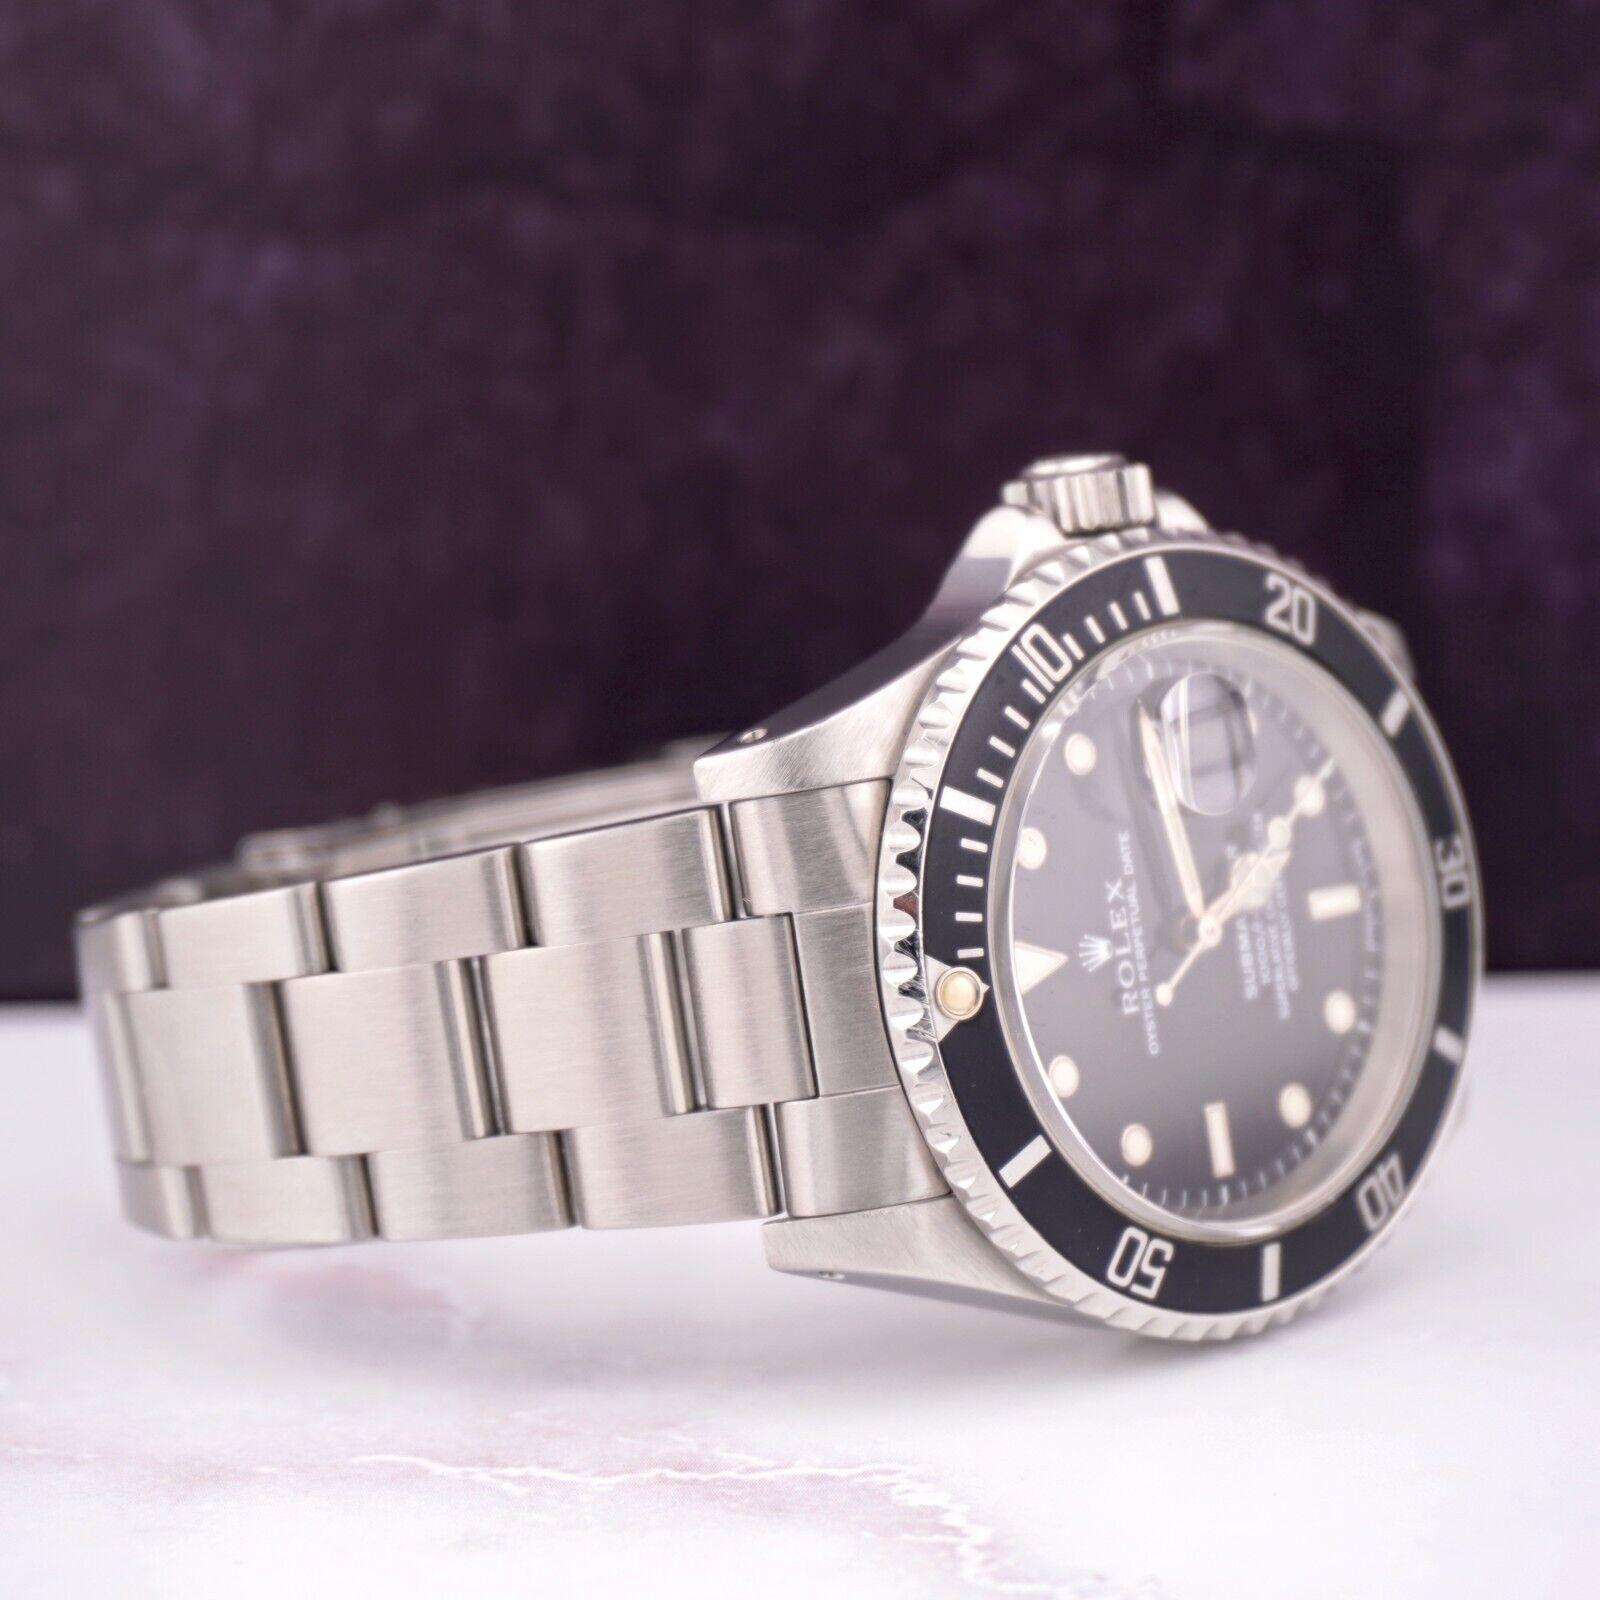 Montre Rolex Submariner Date 40mm. Une montre d'occasion avec boîte cadeau. La montre est 100% authentique et est accompagnée d'une carte d'authenticité. La référence de la montre est 16610 et elle est en très bon état (voir photos). Le cadran est